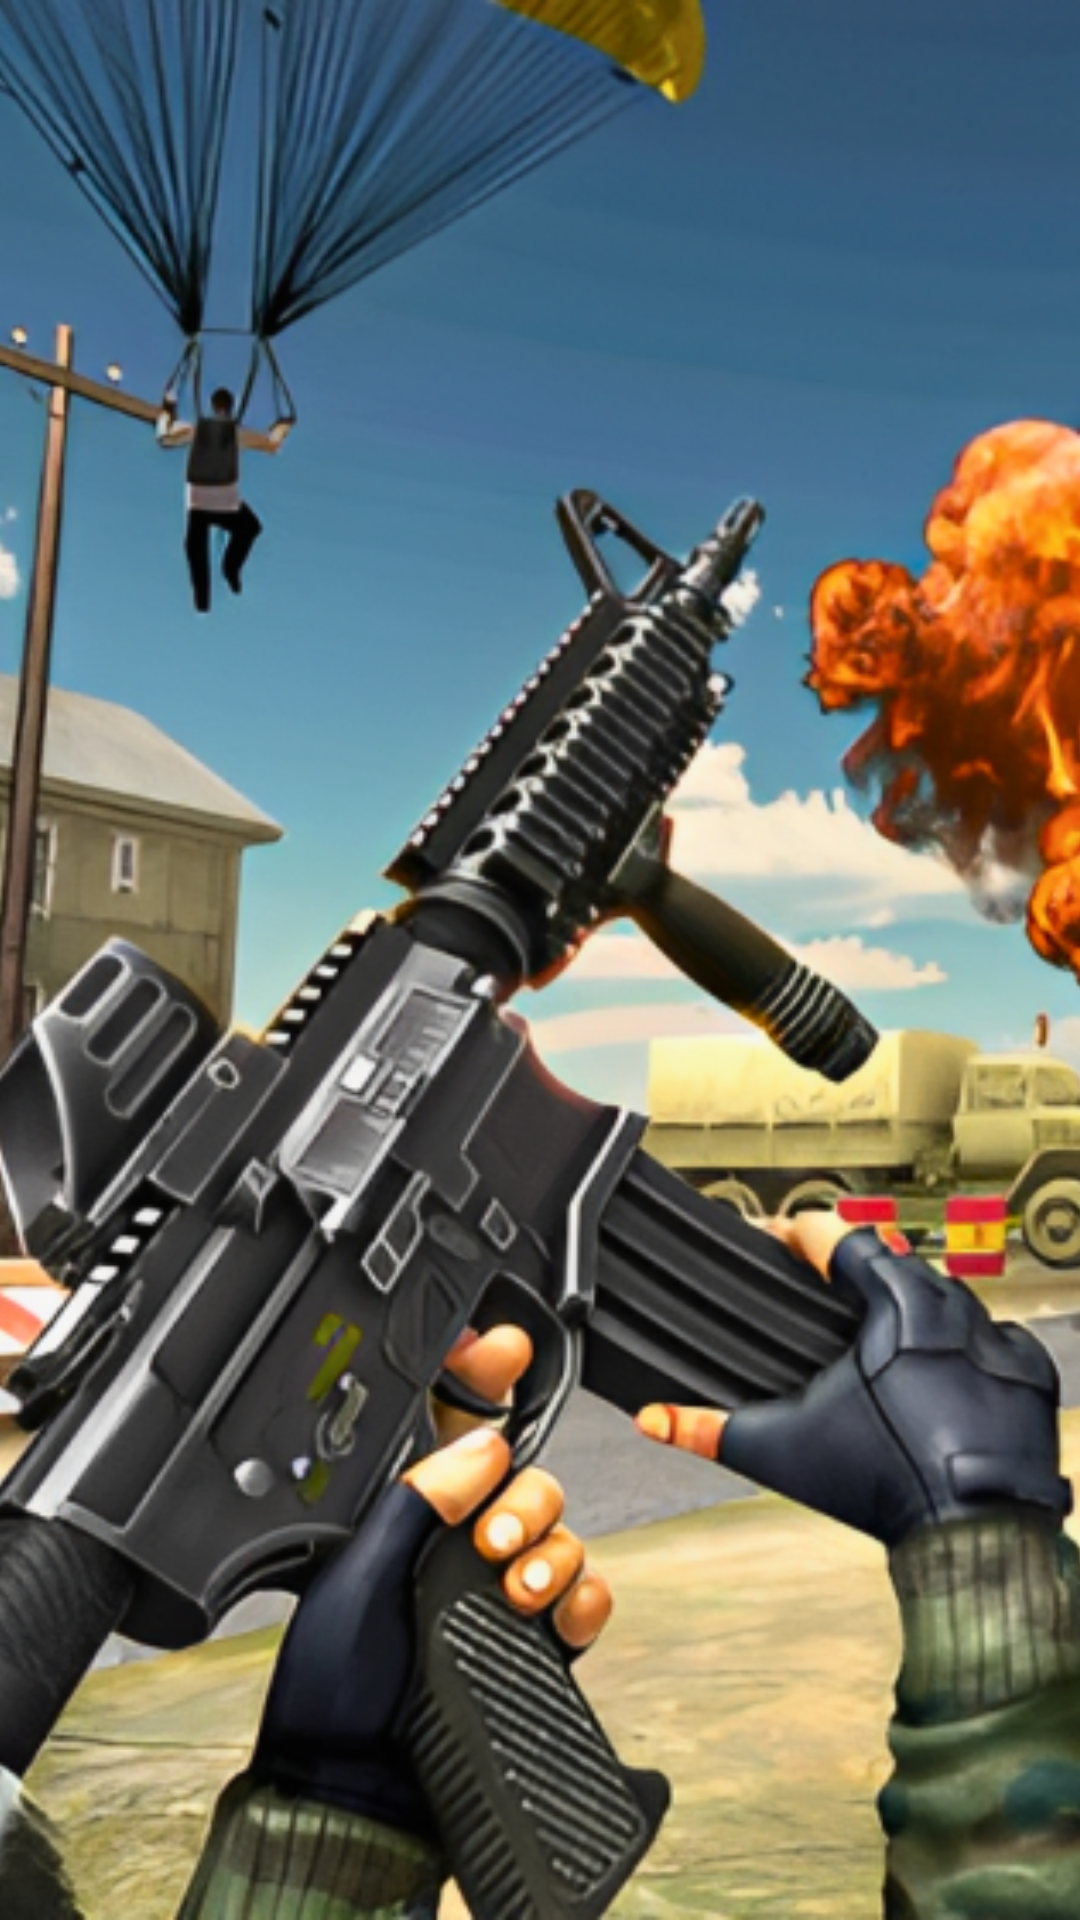 Gunpie é novo jogo de tiro e aventura da Nexon (Android e iOS